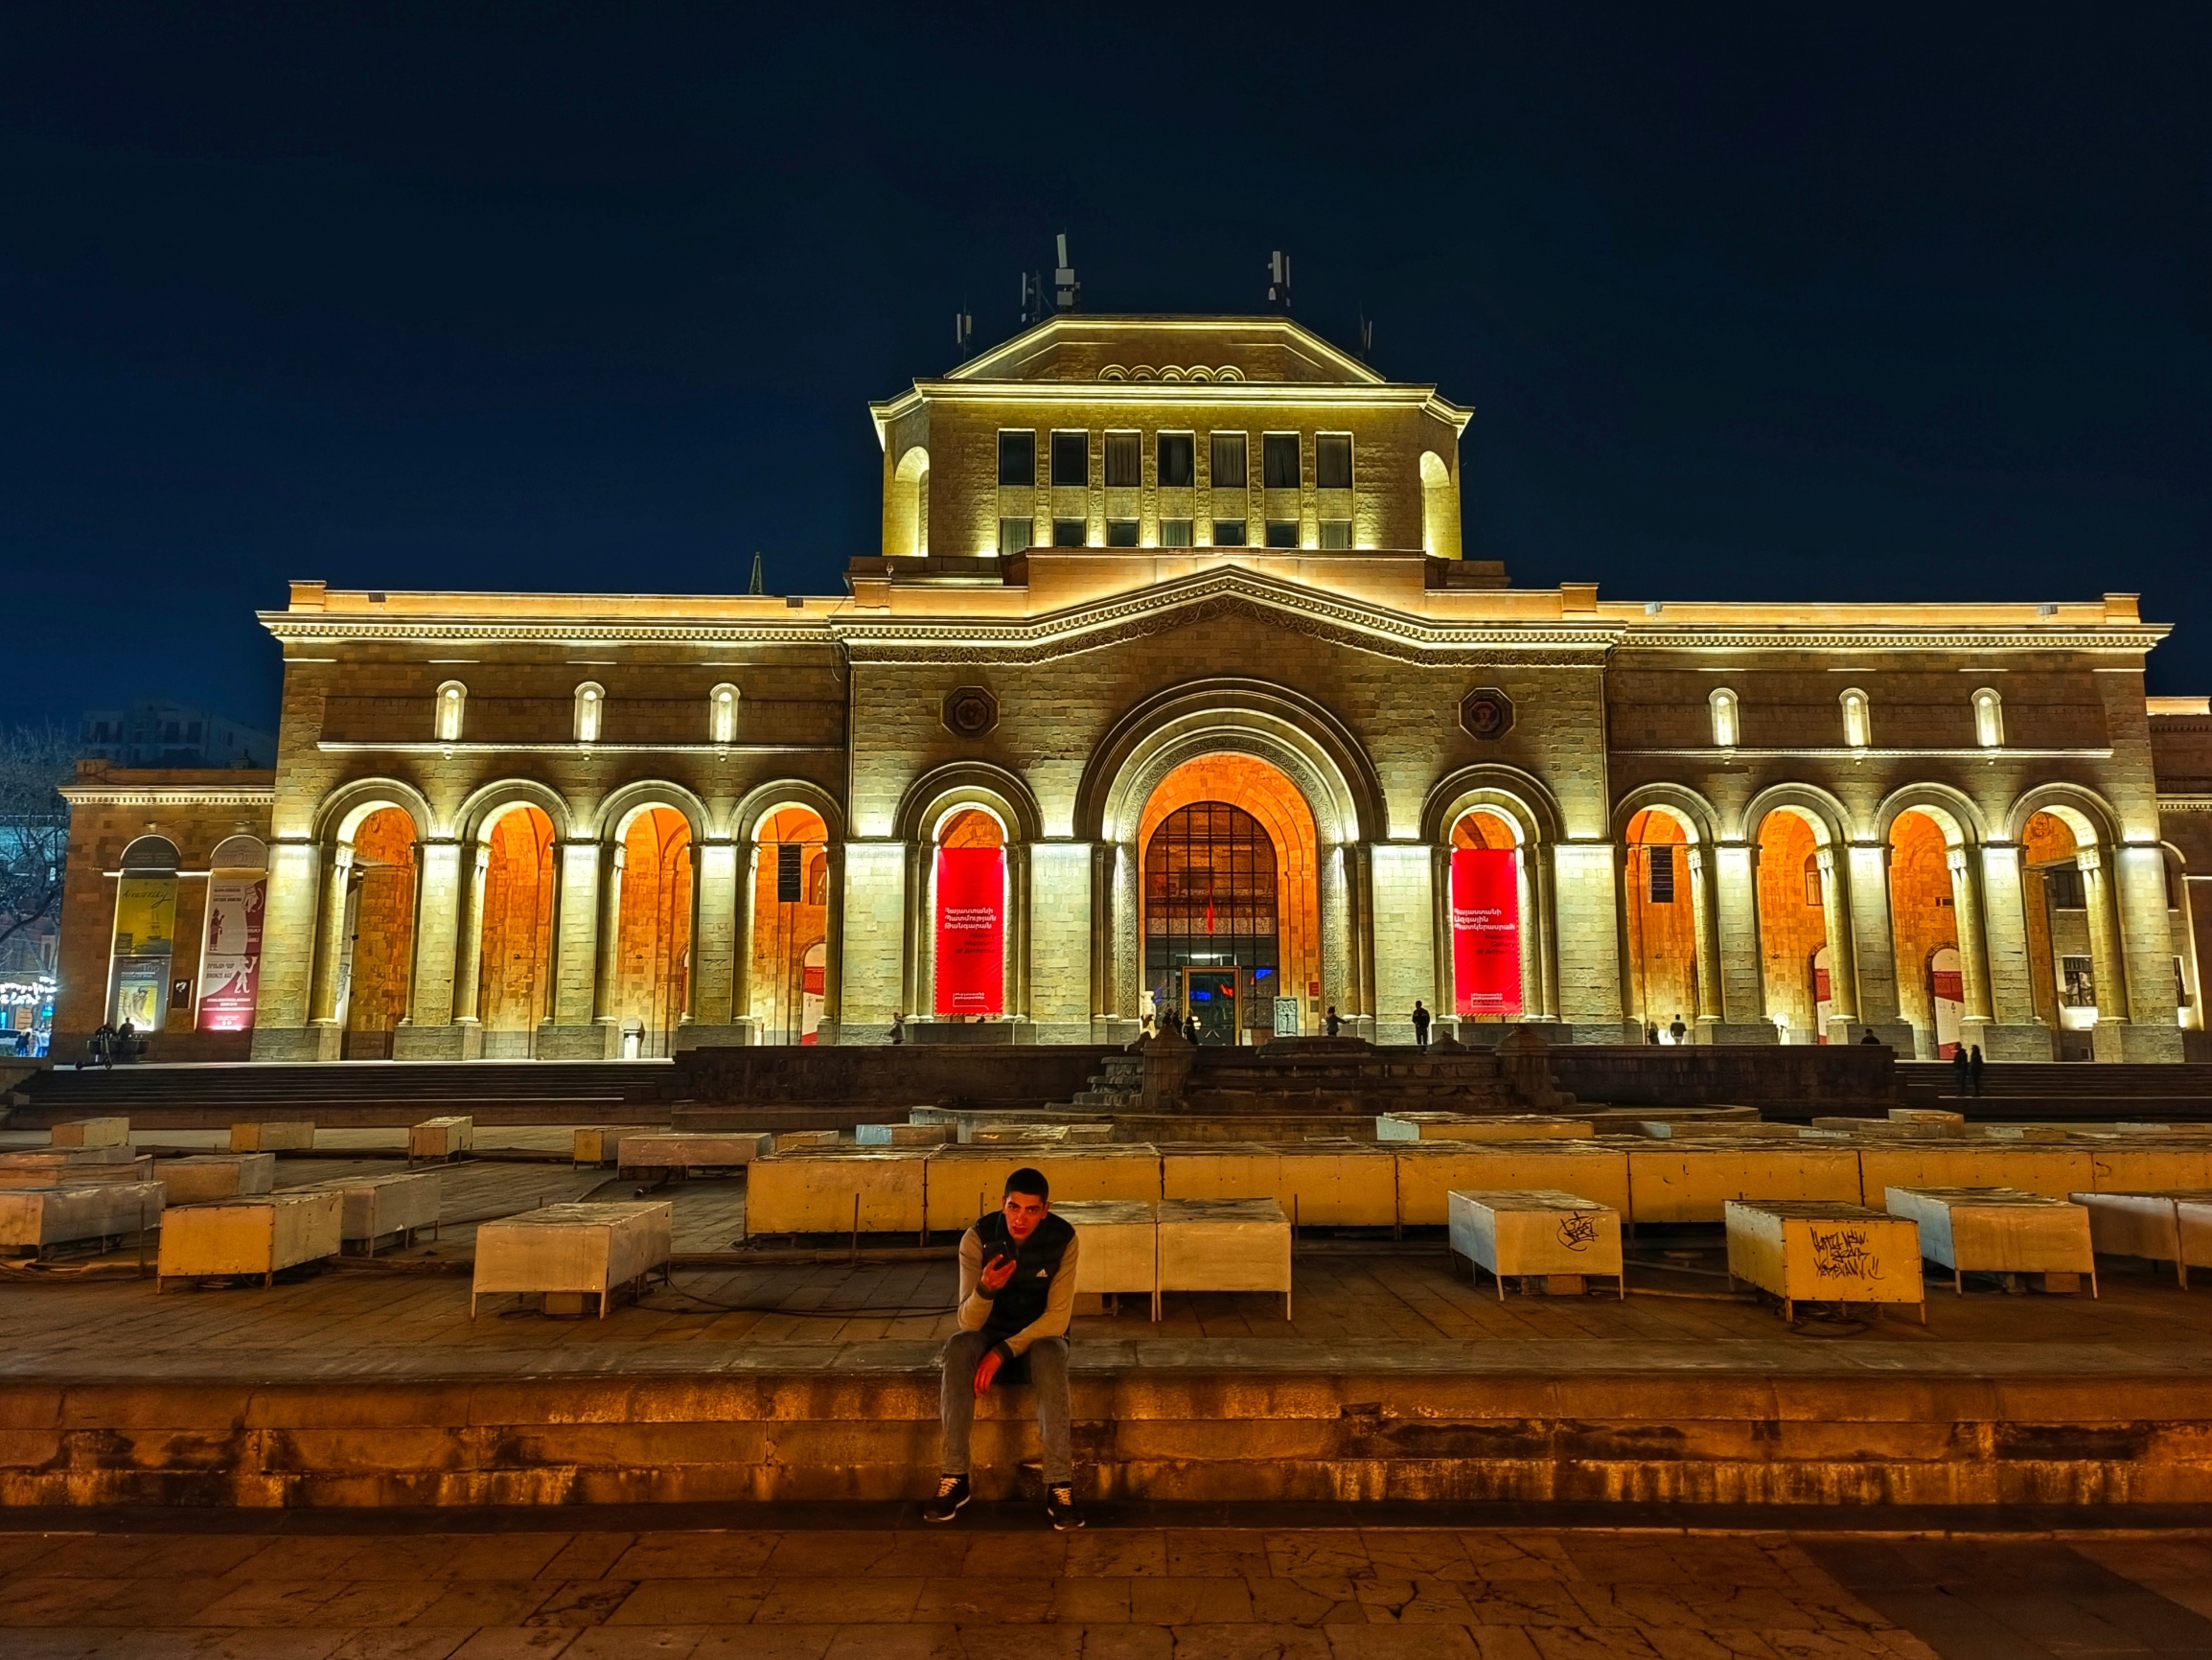 埃里温是​亚美尼亚的首都，以地位而言。 共和国广场等同于天安门广场， 旁边的步行街等同于王府井大街。